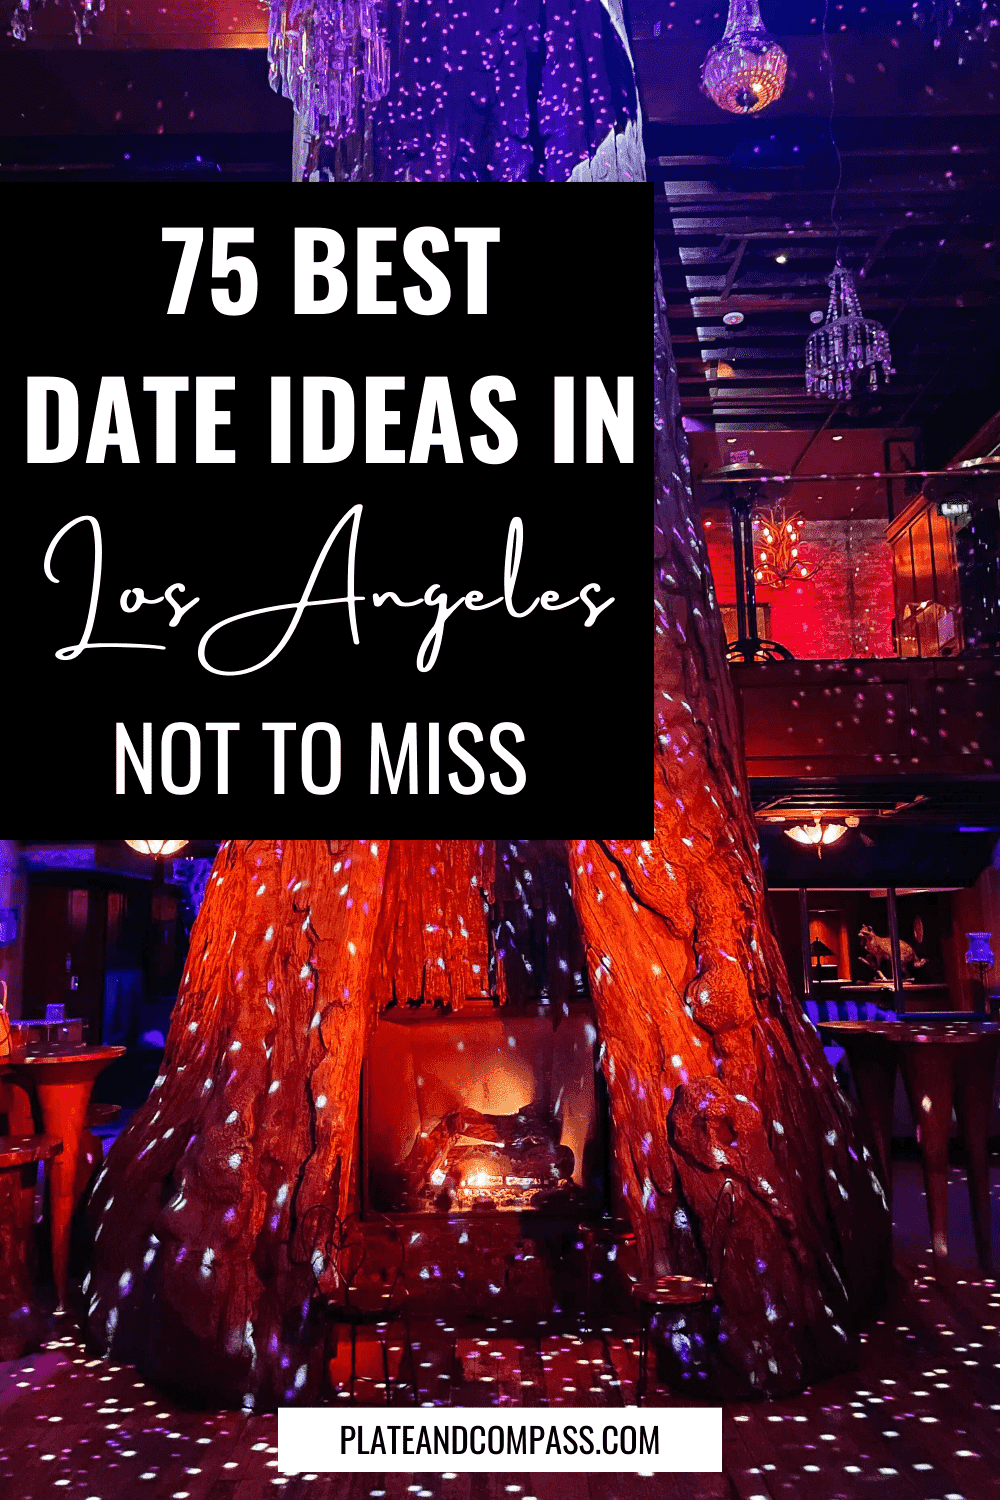 Date Ideas in Los Angeles